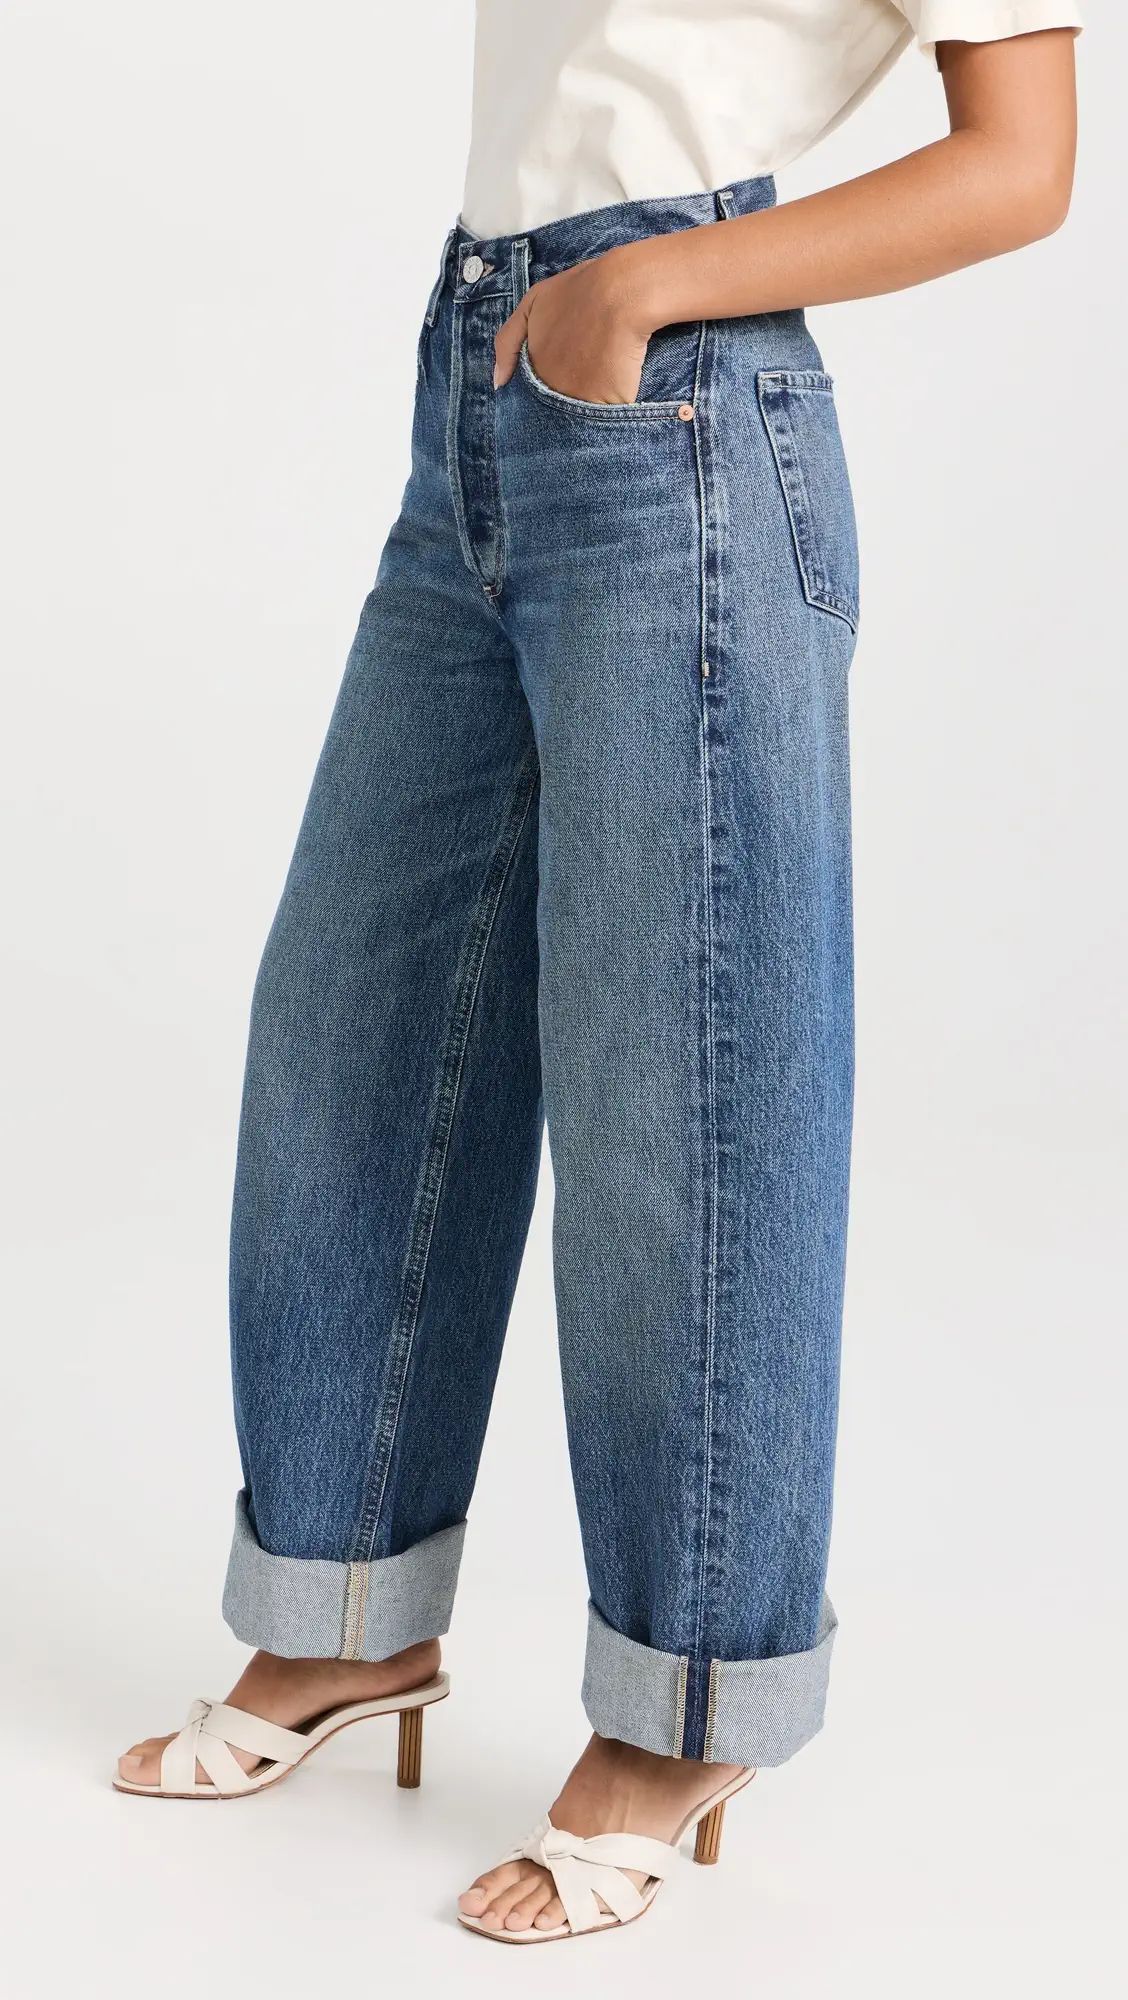 Let’s Talk About Wide-Leg Jeans - Denimology